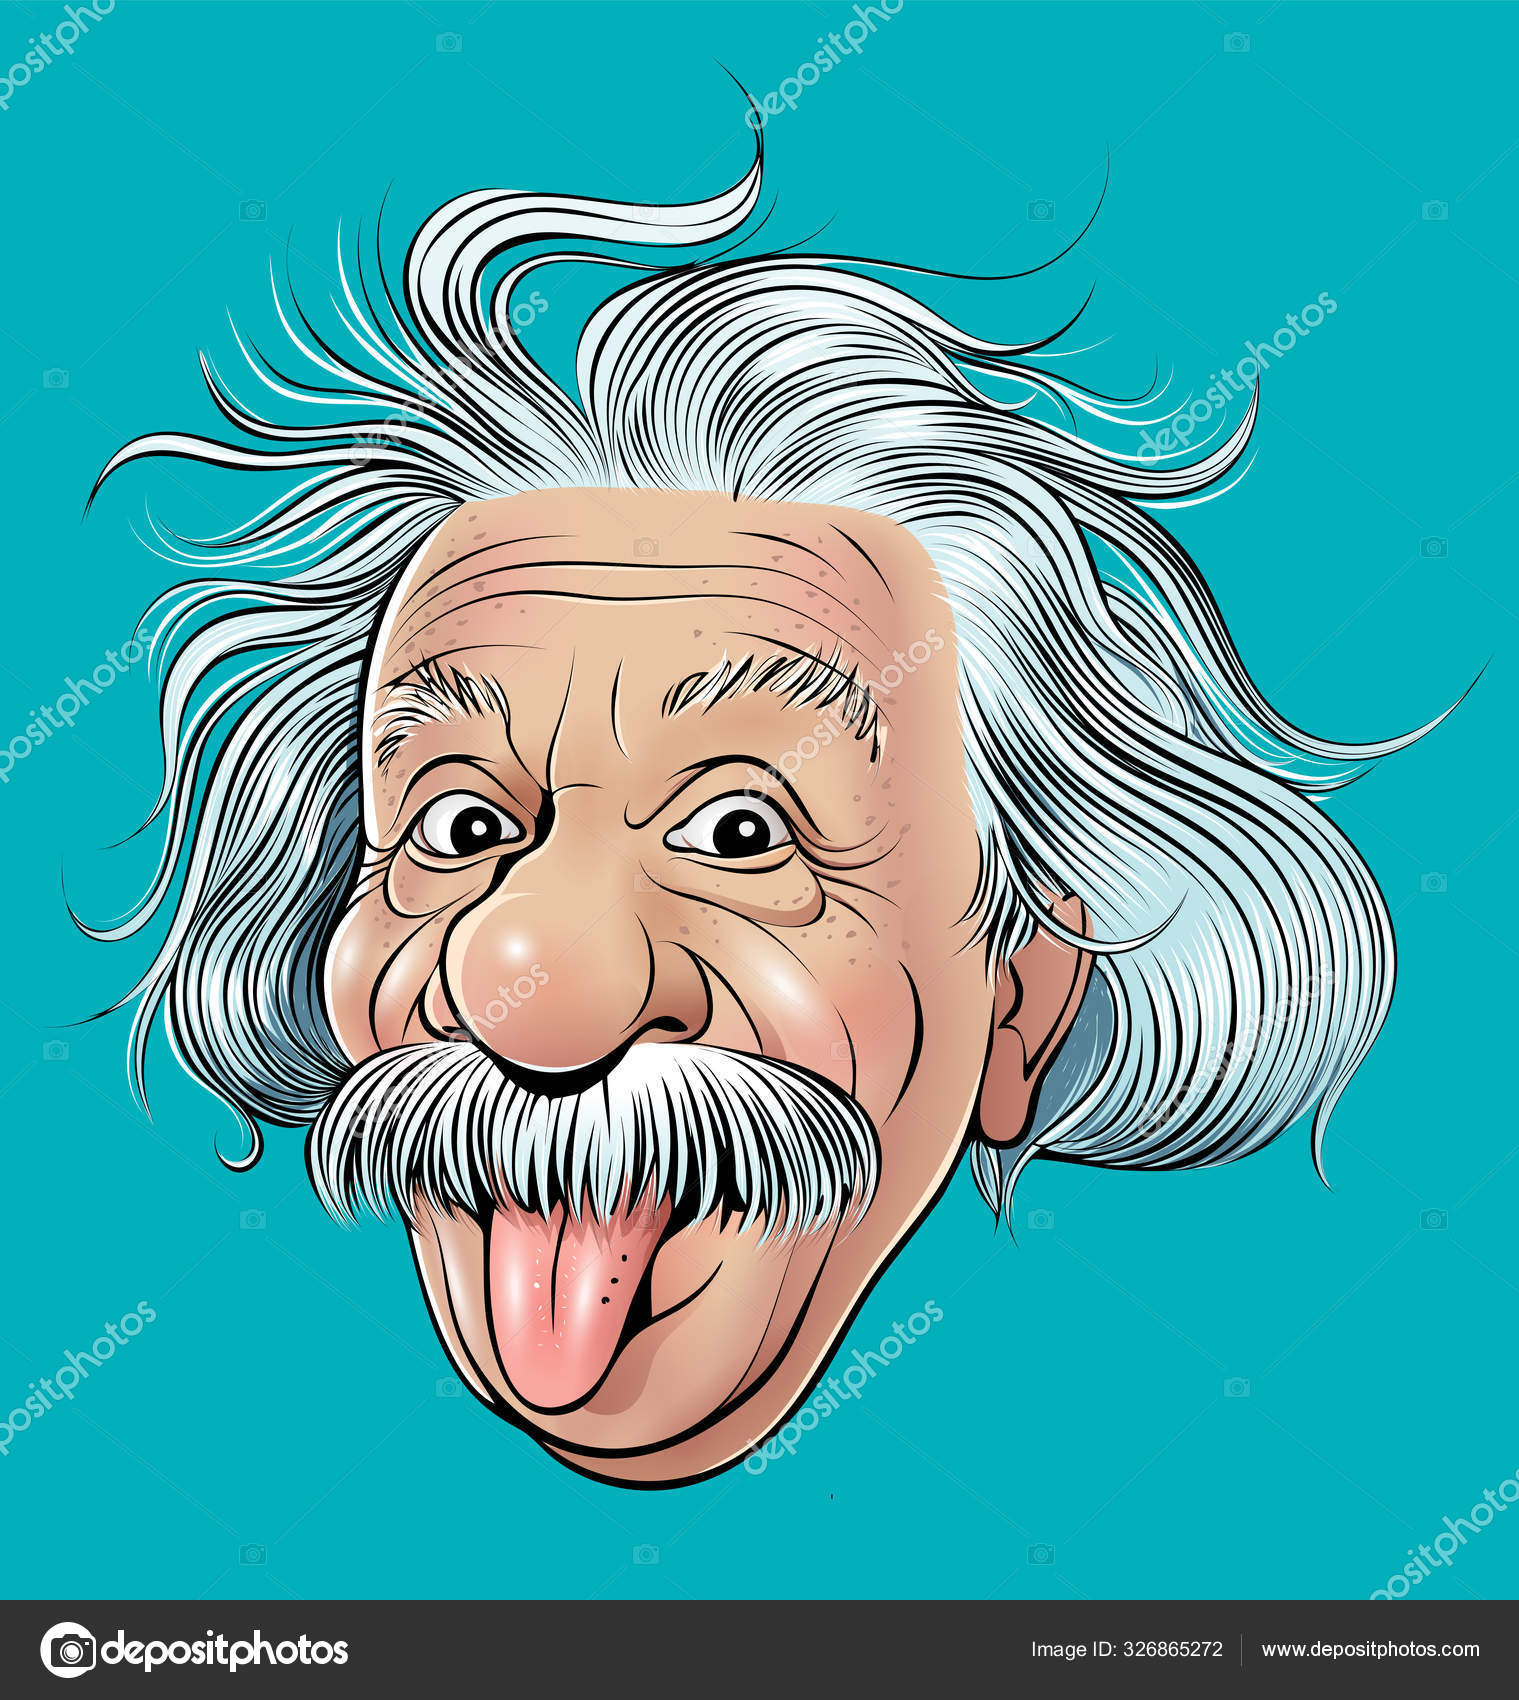 Einstein karikatur